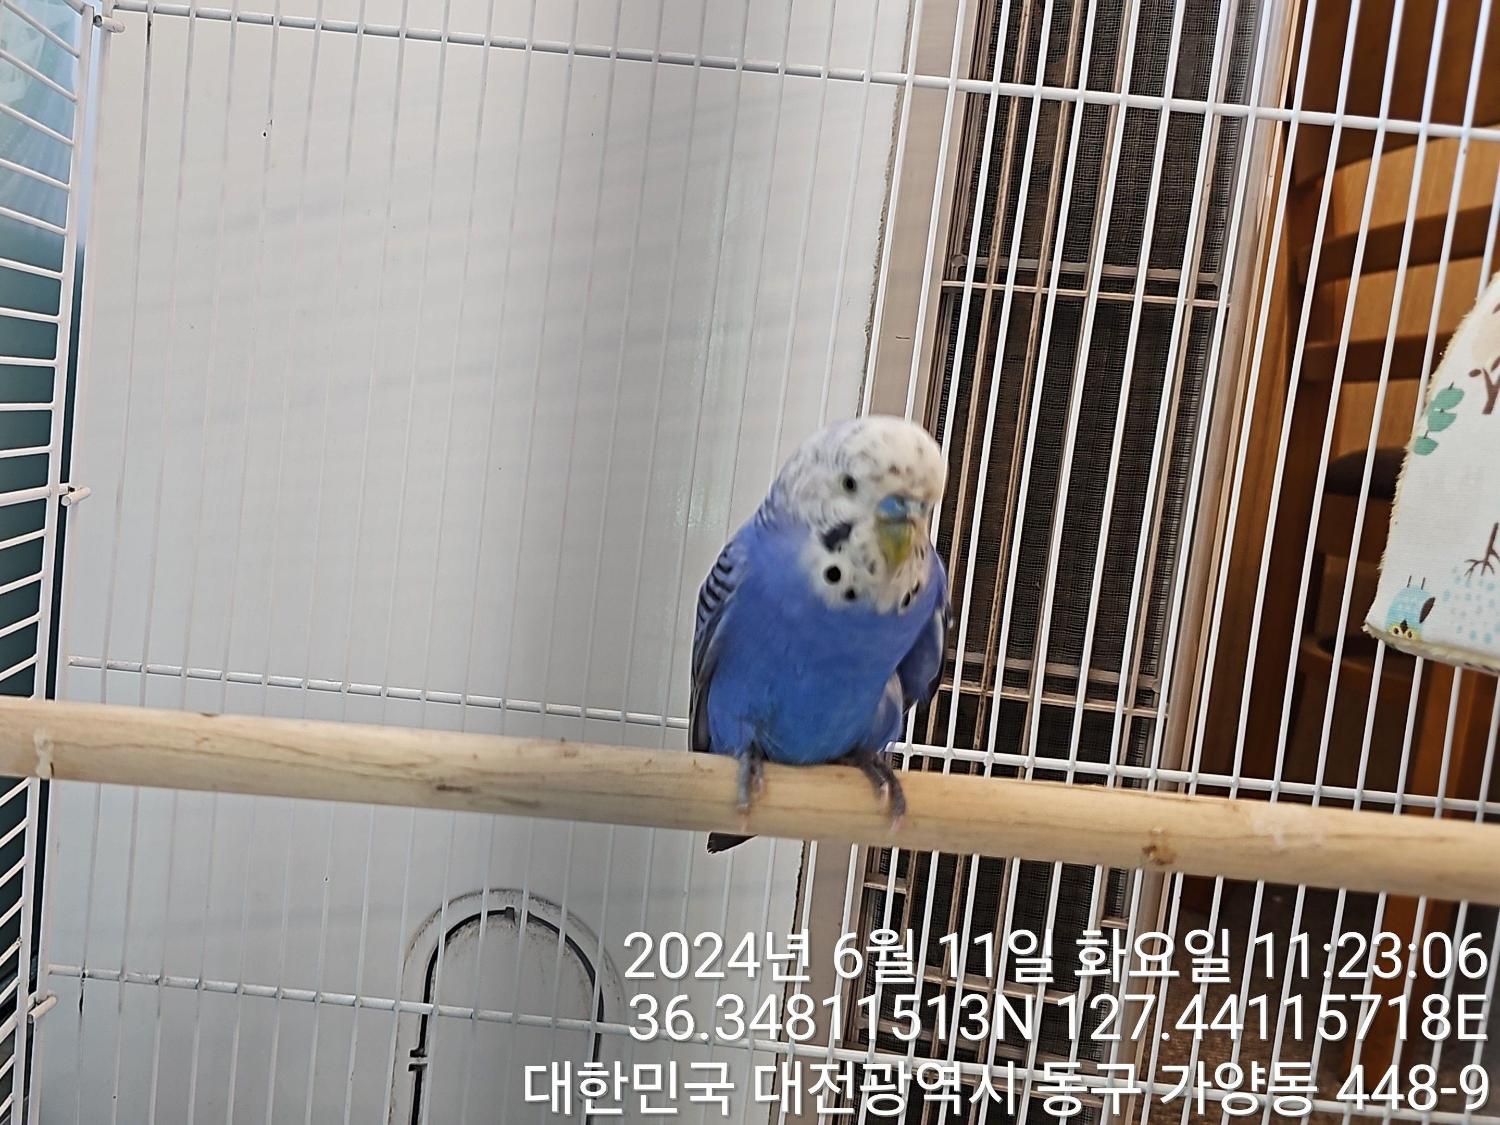 공고 번호가 대전-동구-2024-00163인 기타축종 동물 사진